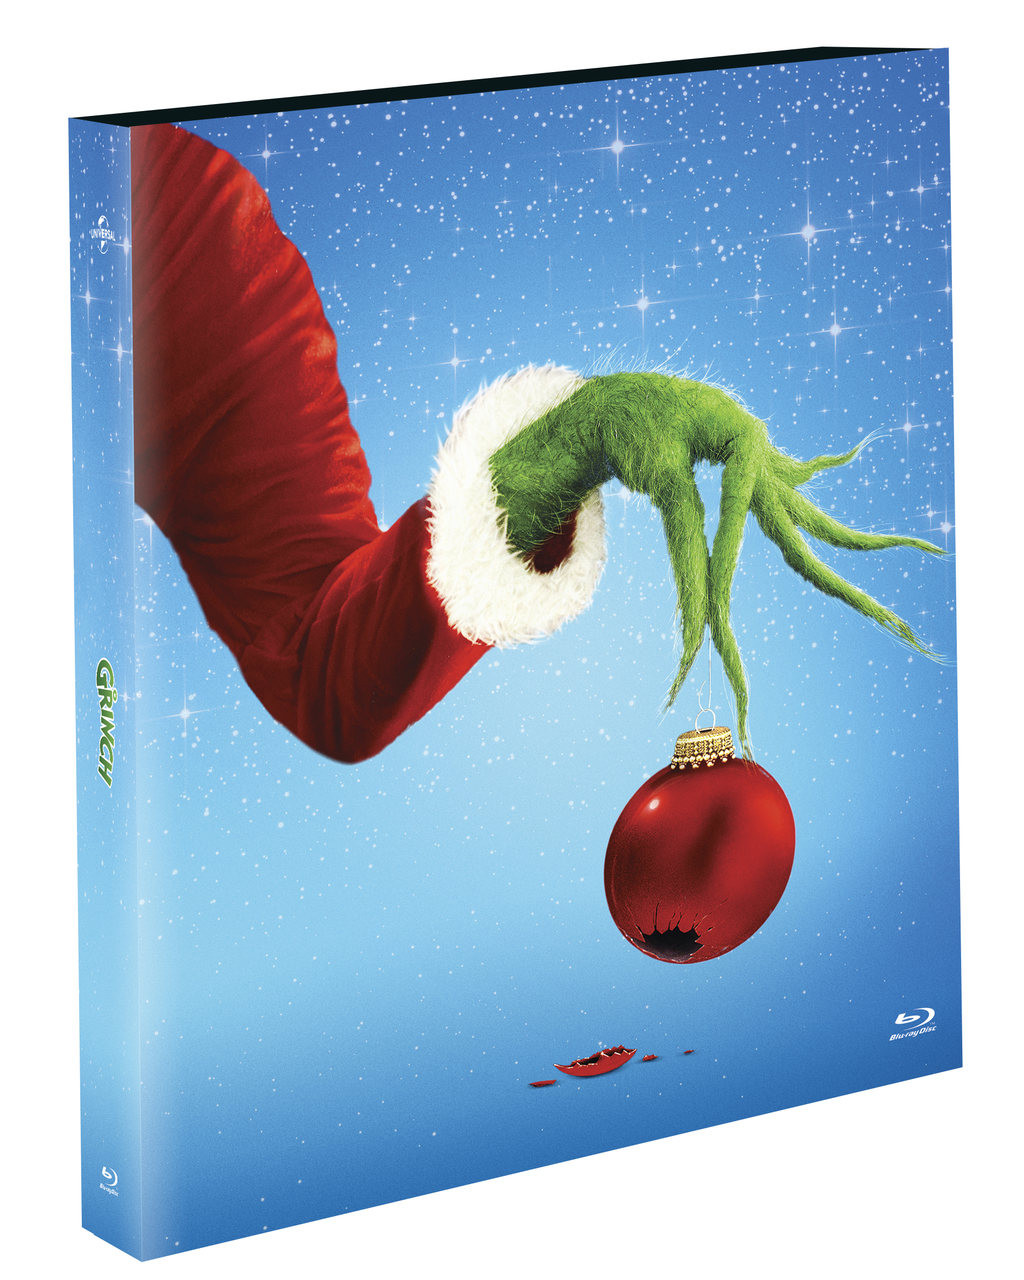 Blu-ray - O Grinch - Edição com Luva (Exclusivo)